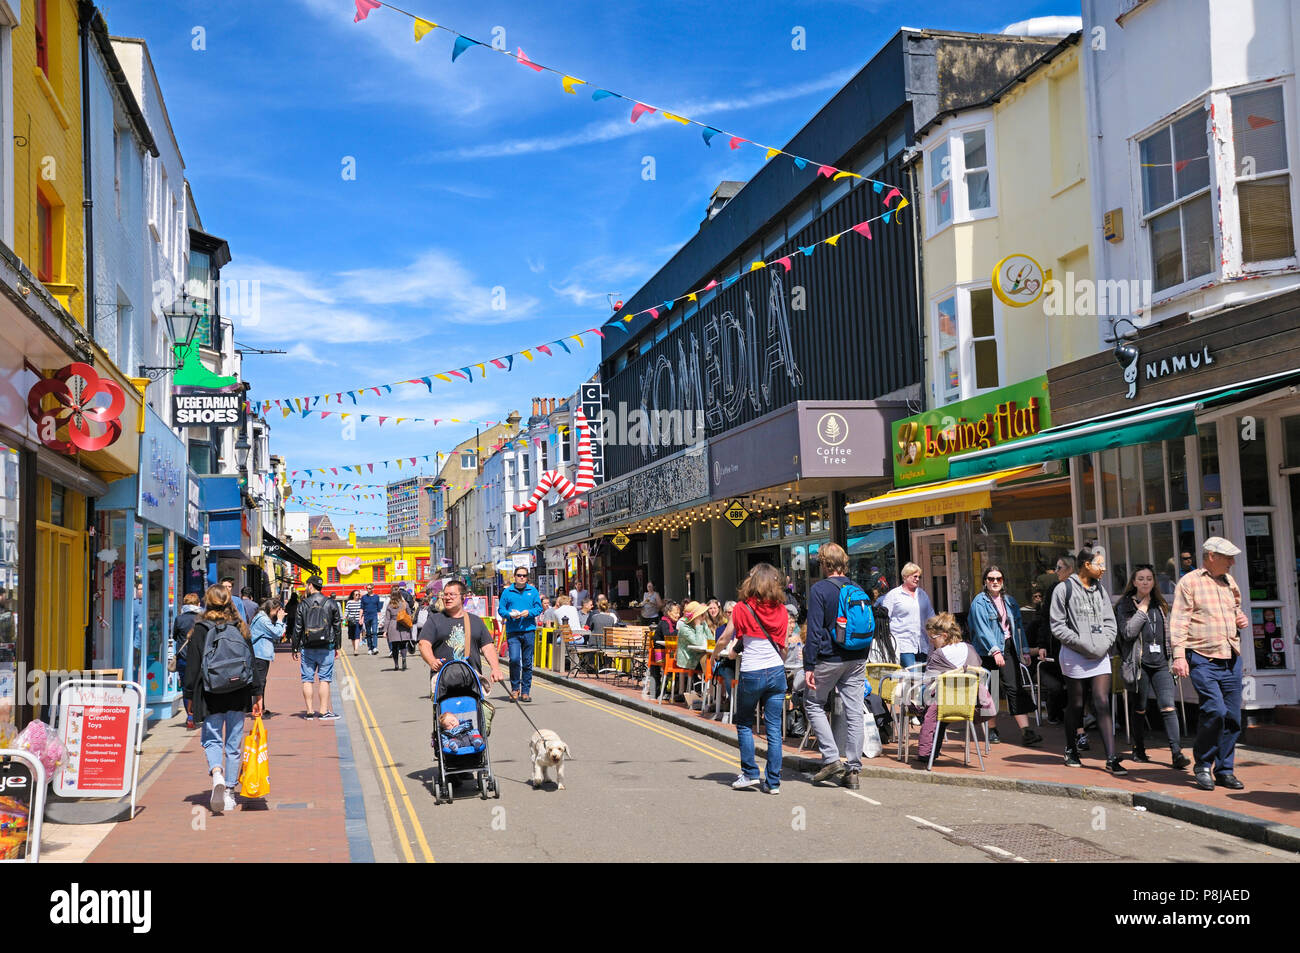 North Laine, Brighton, East Sussex, Großbritannien. Geschäfte, Restaurants und Komedia - einer der beliebtesten Unterhaltungsorte von Brighton - in der Gardner Street. Stockfoto